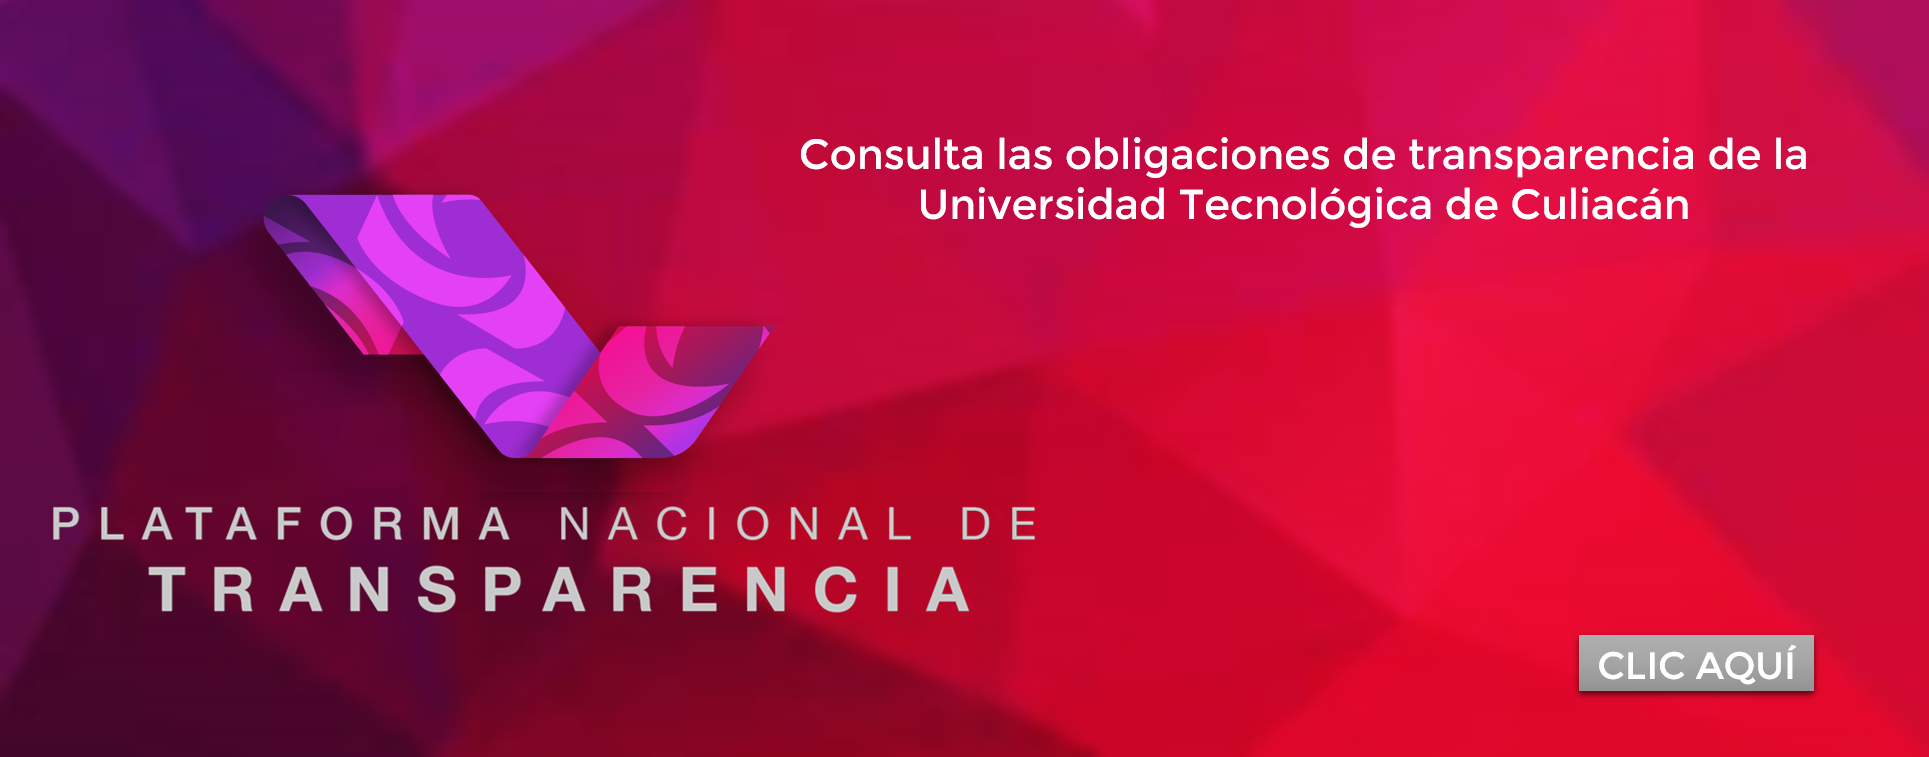 Consulta las Obligaciones de Transparencia de la Universidad Tecnológica de Culiacán (UTCULIACAN)